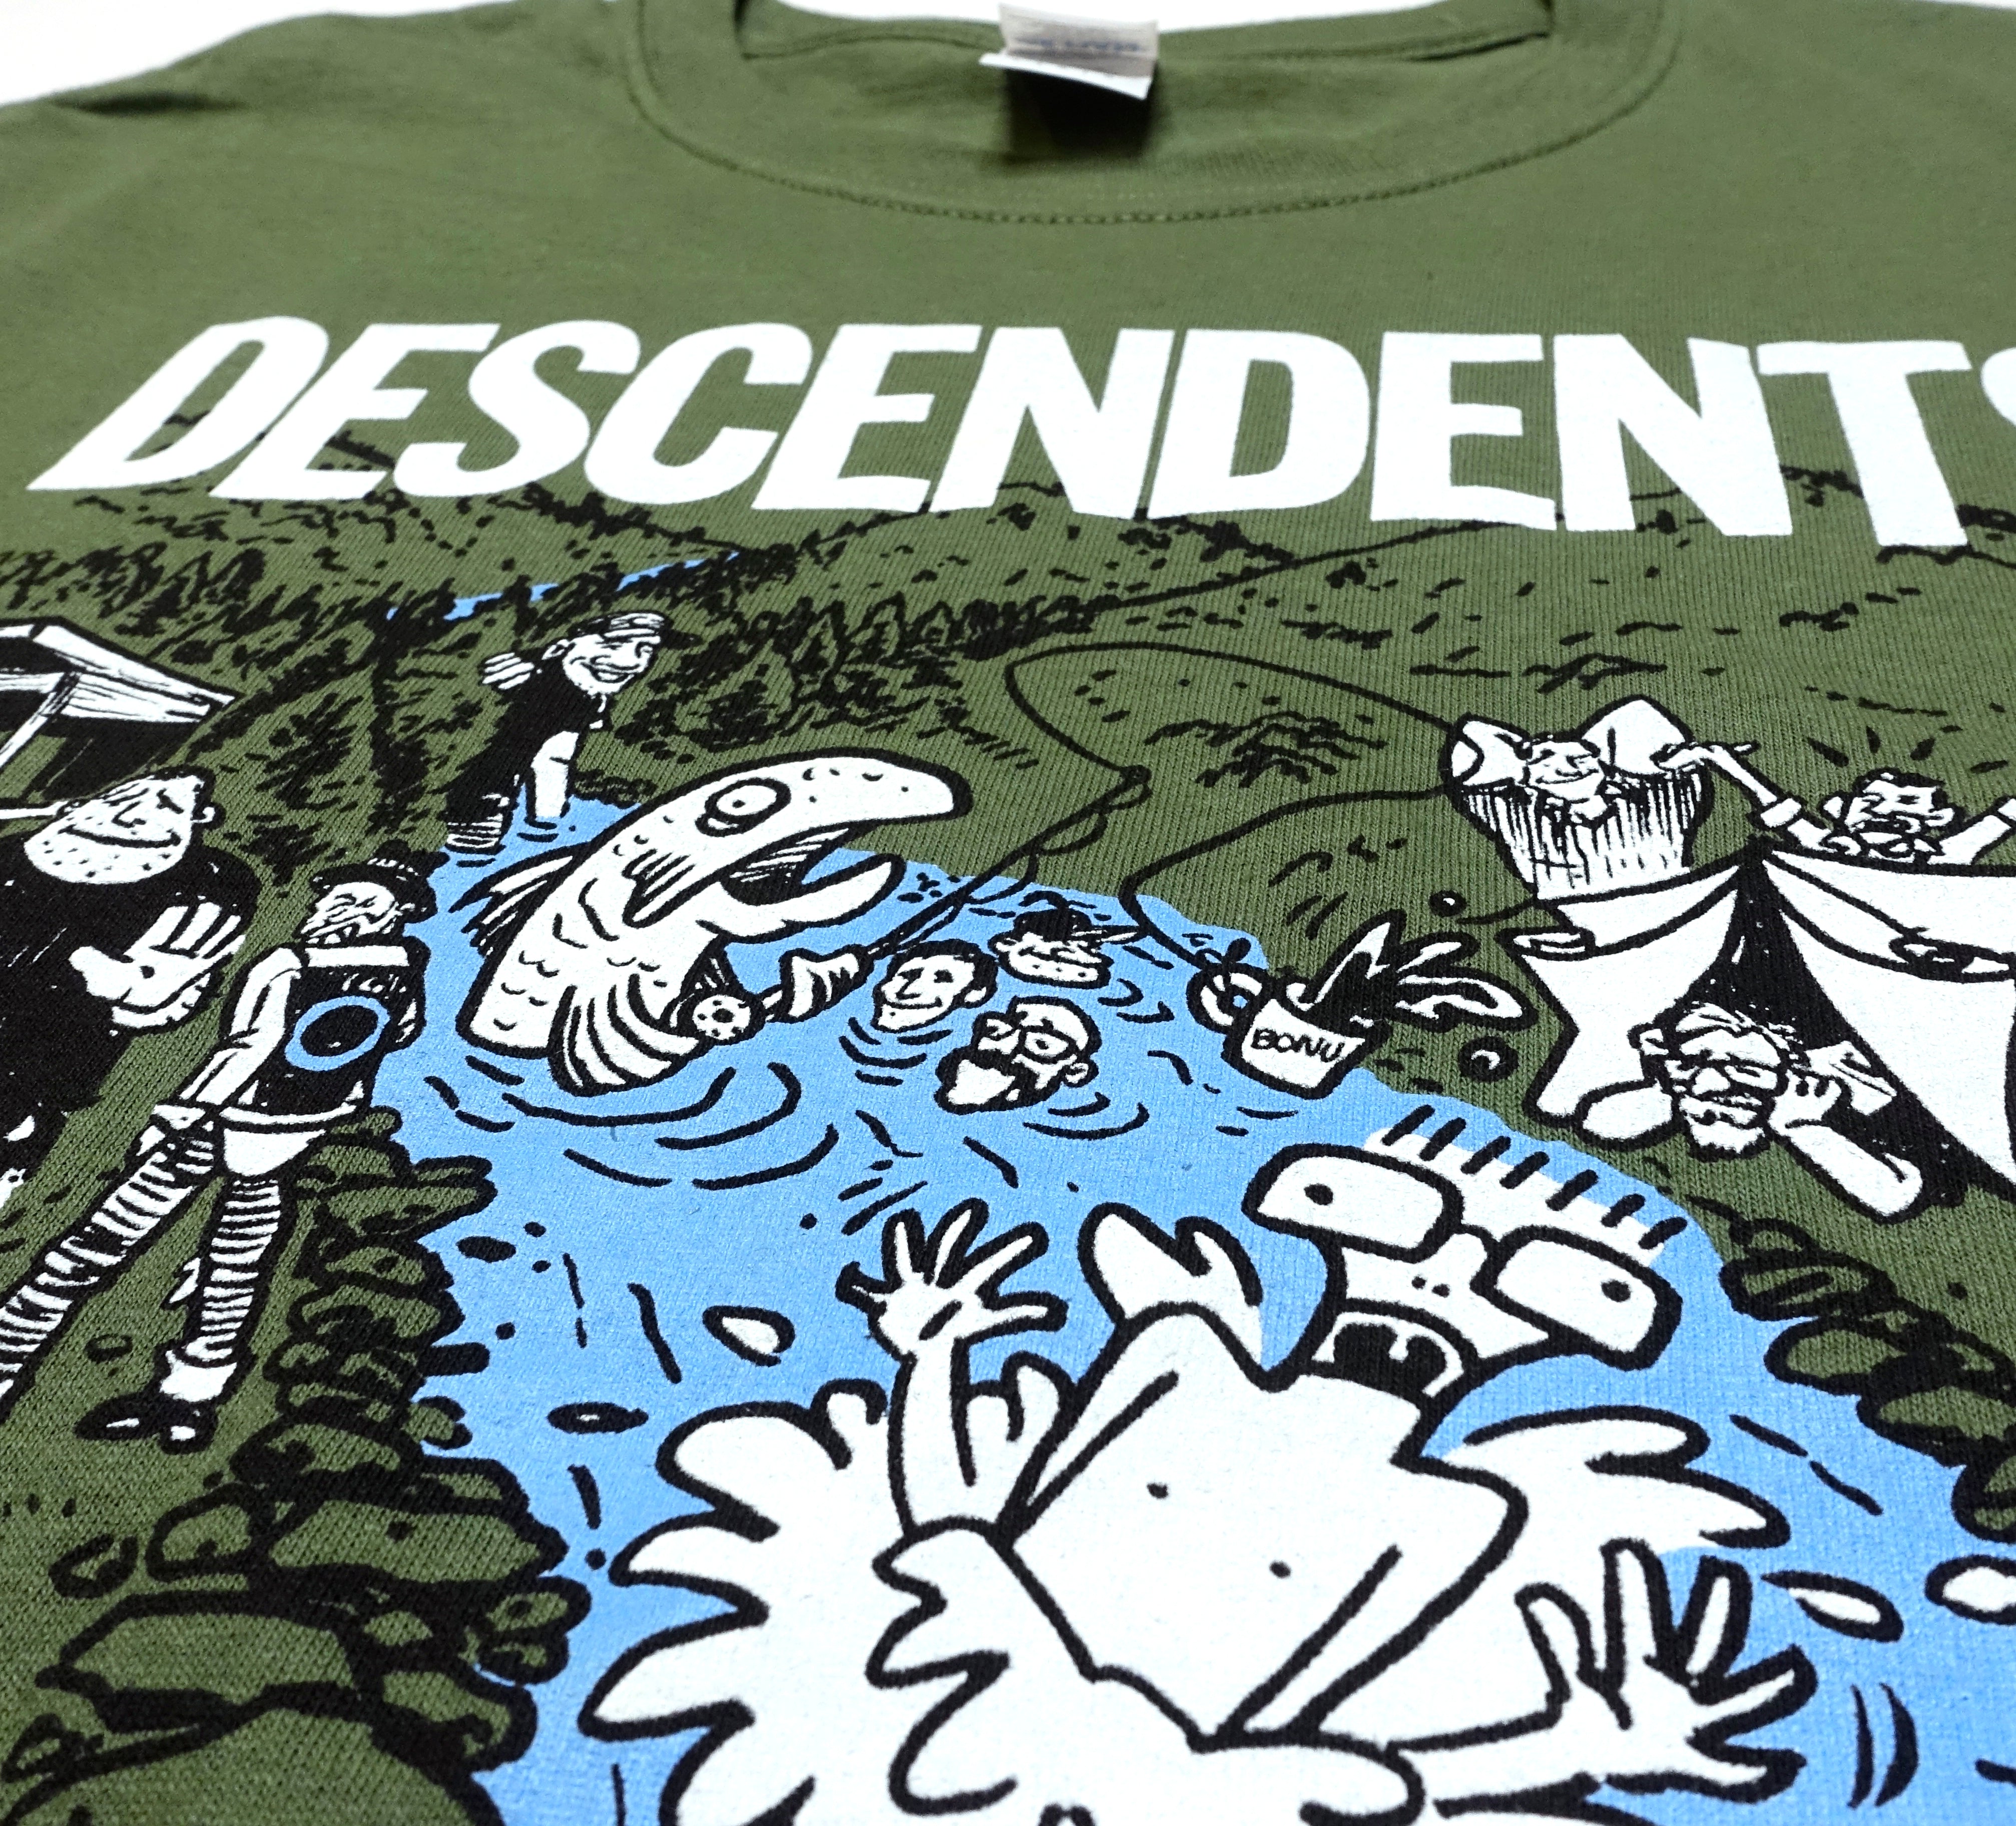 Descendents - Mishawaka 2018 Tour Shirt Size Large